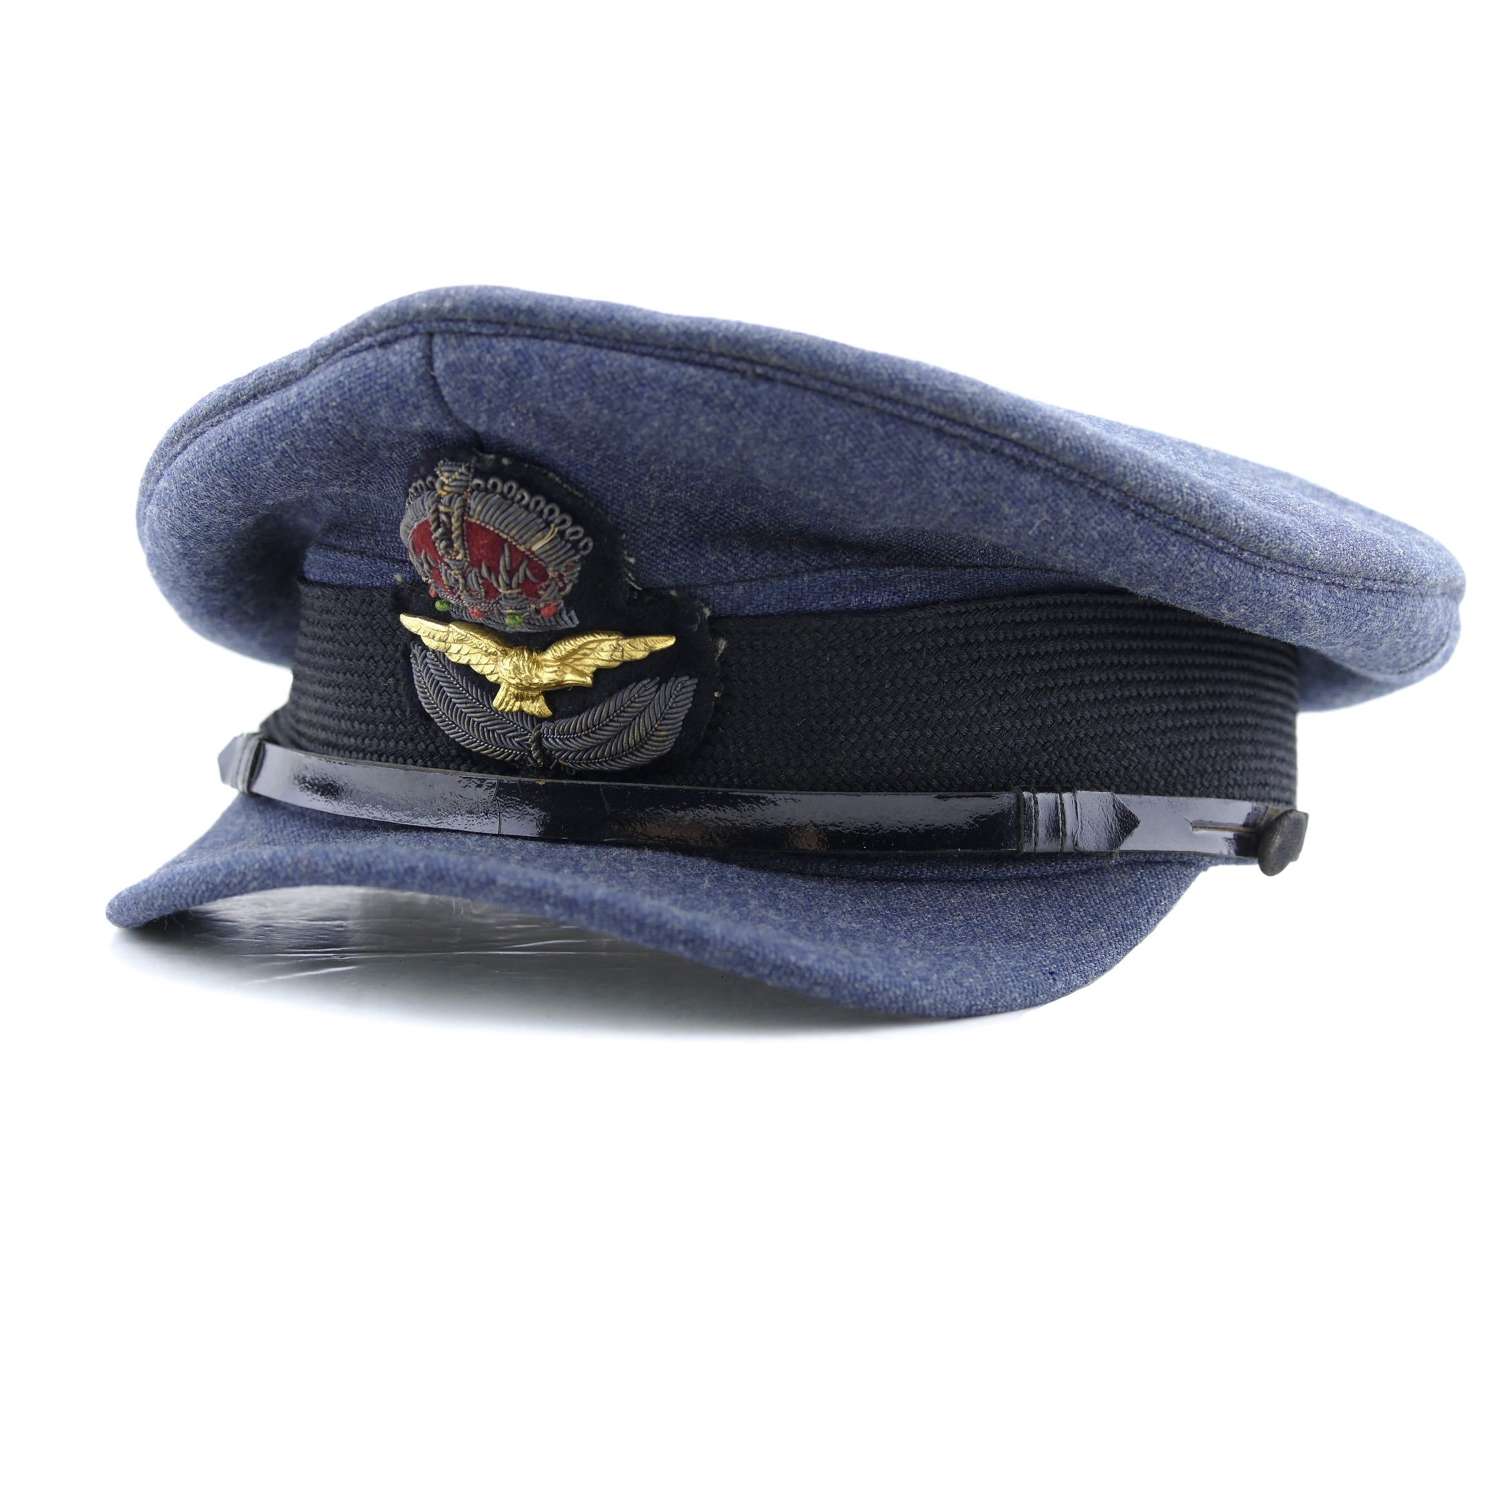 RAF pre-war officer rank service dress cap